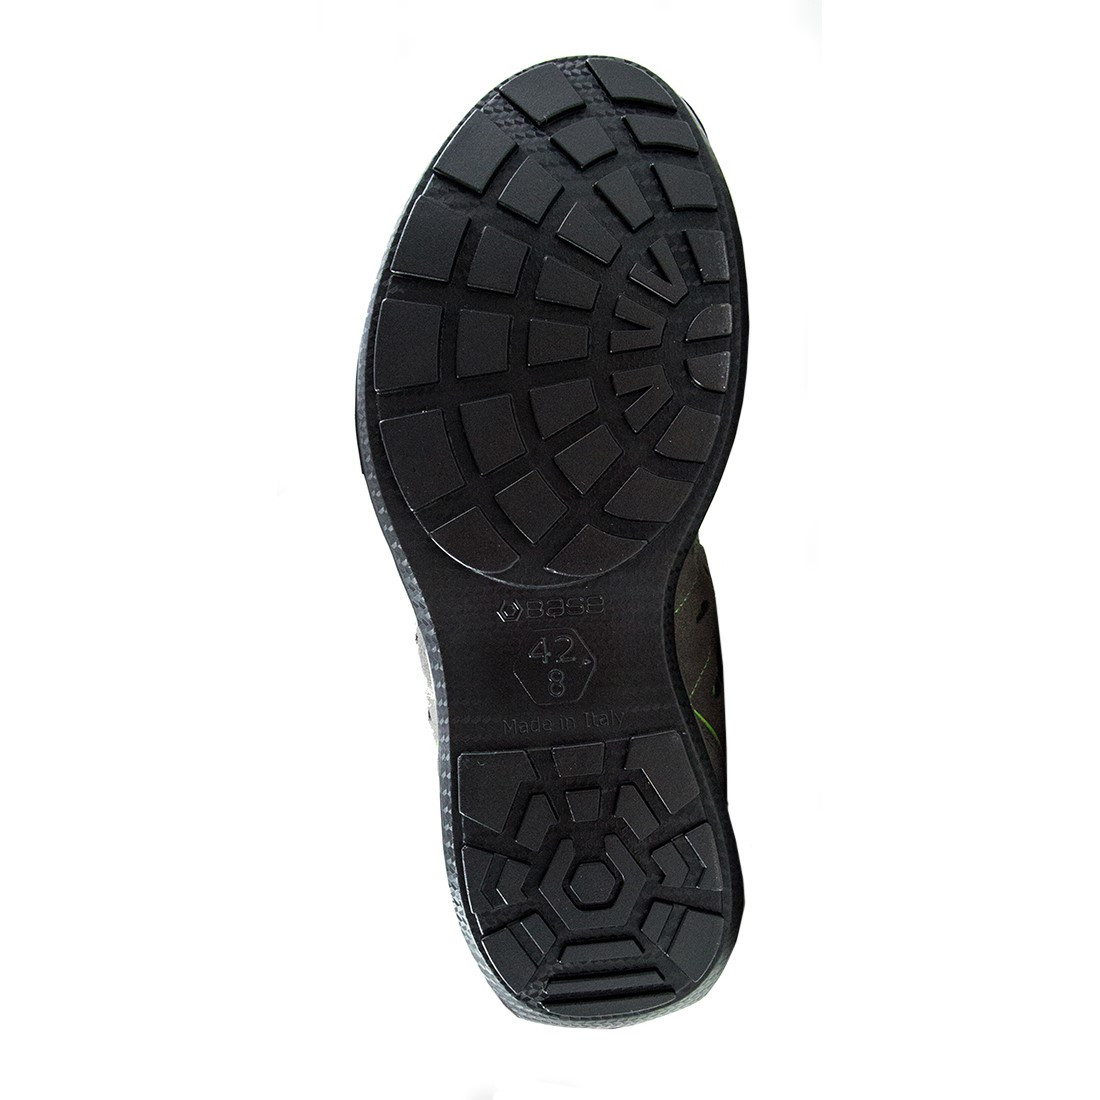 Climb Shoe S1P SRC - Les chaussures de protection